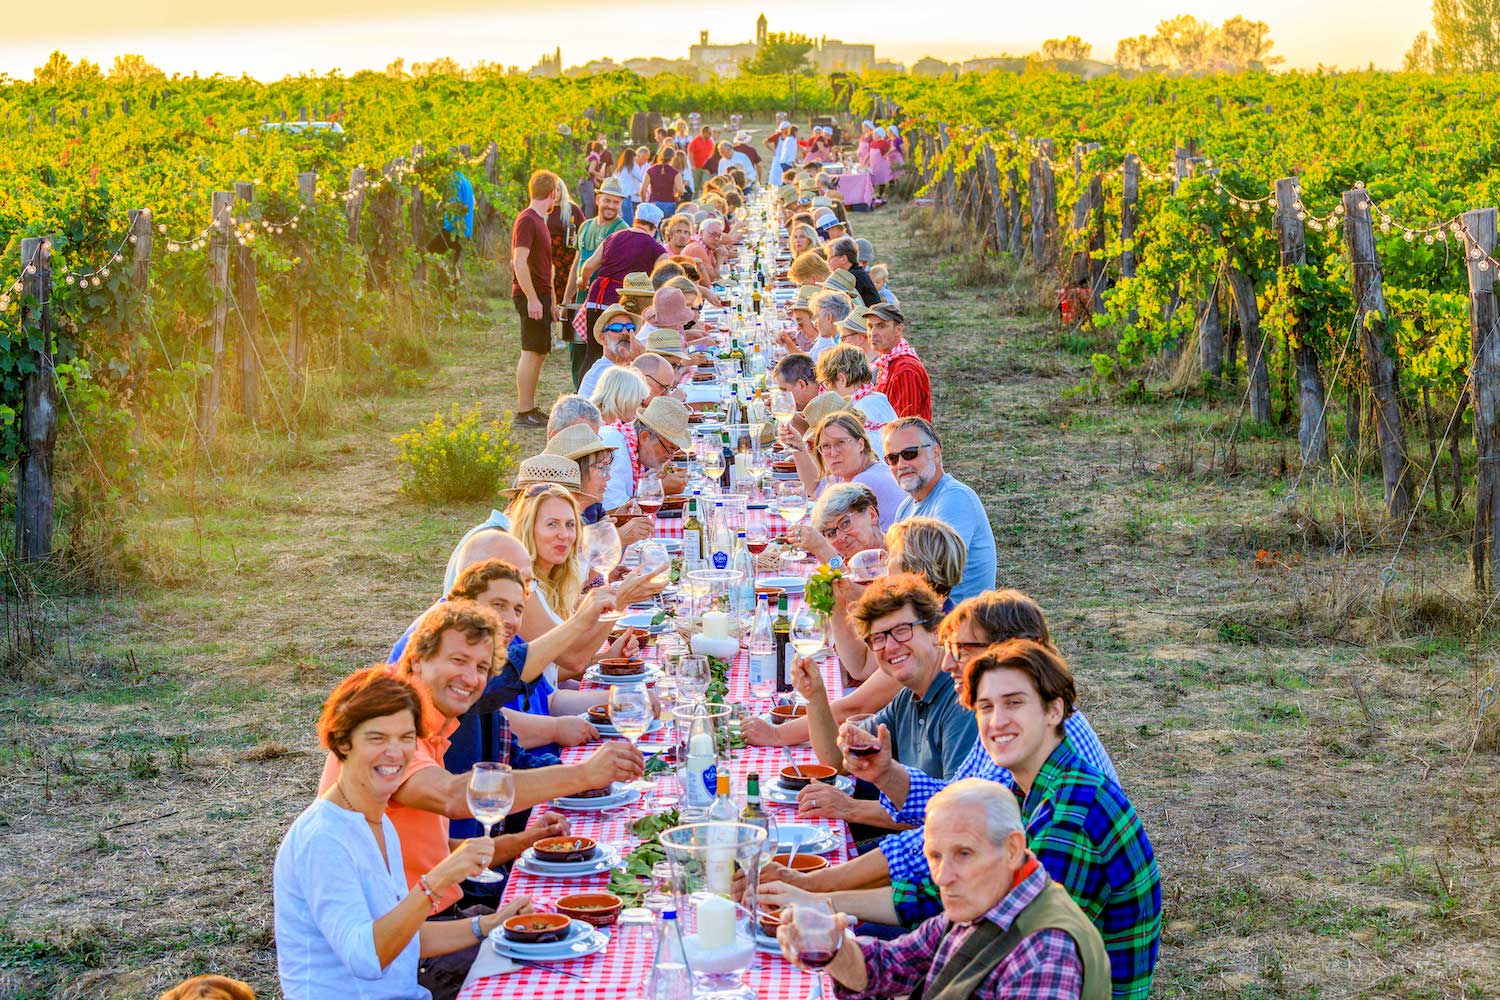 Ein großer Tisch zwischen den Reben des Bio-Weingut an dem viele Personen sitzen und gemeinsam Essen und Bio-Wein trinken